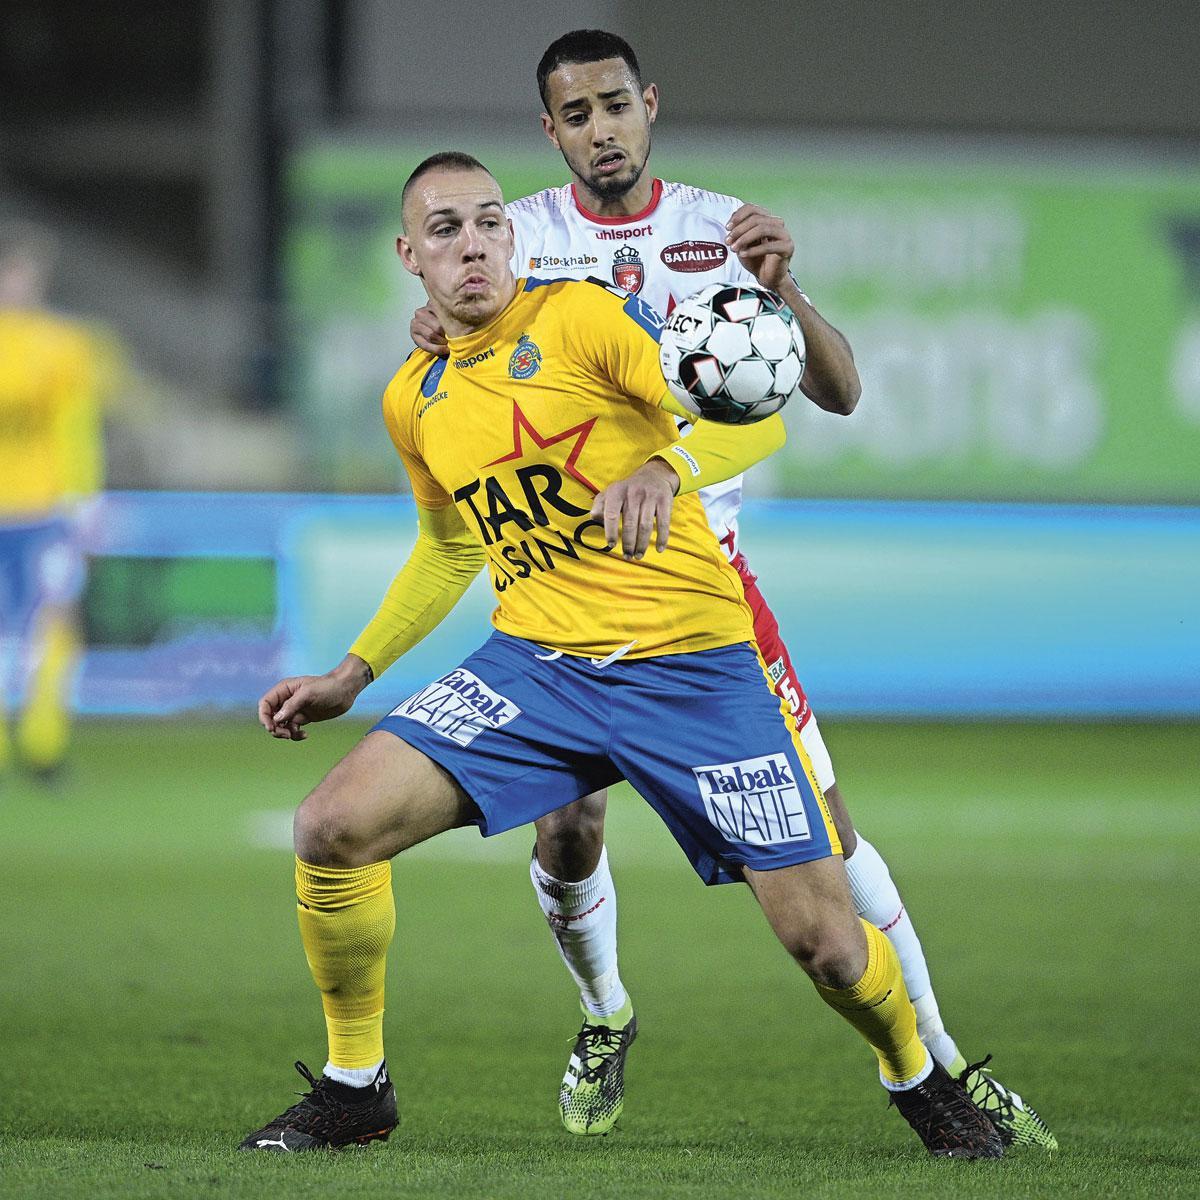 Waasland-Beveren - Excel Mouscron 2-0. Michael Frey (hier in duel met Saad Agouzoul) scoorde in blessuretijd de verlossende 2-0 voor de Waaslanders.